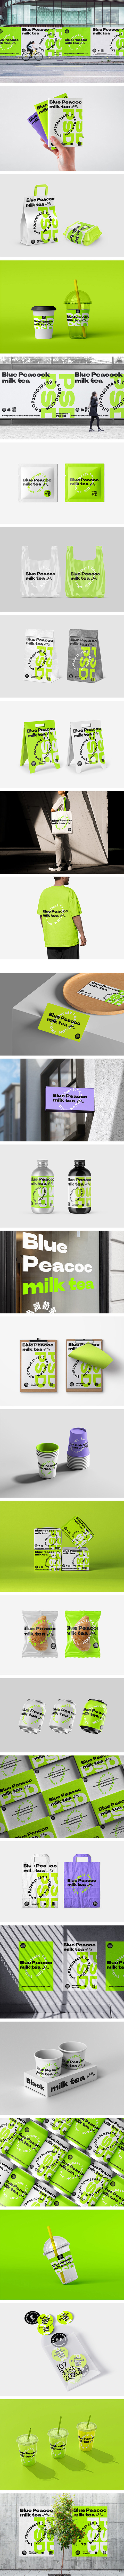 30款潮流酸性咖啡奶茶面包店品牌VI提案...